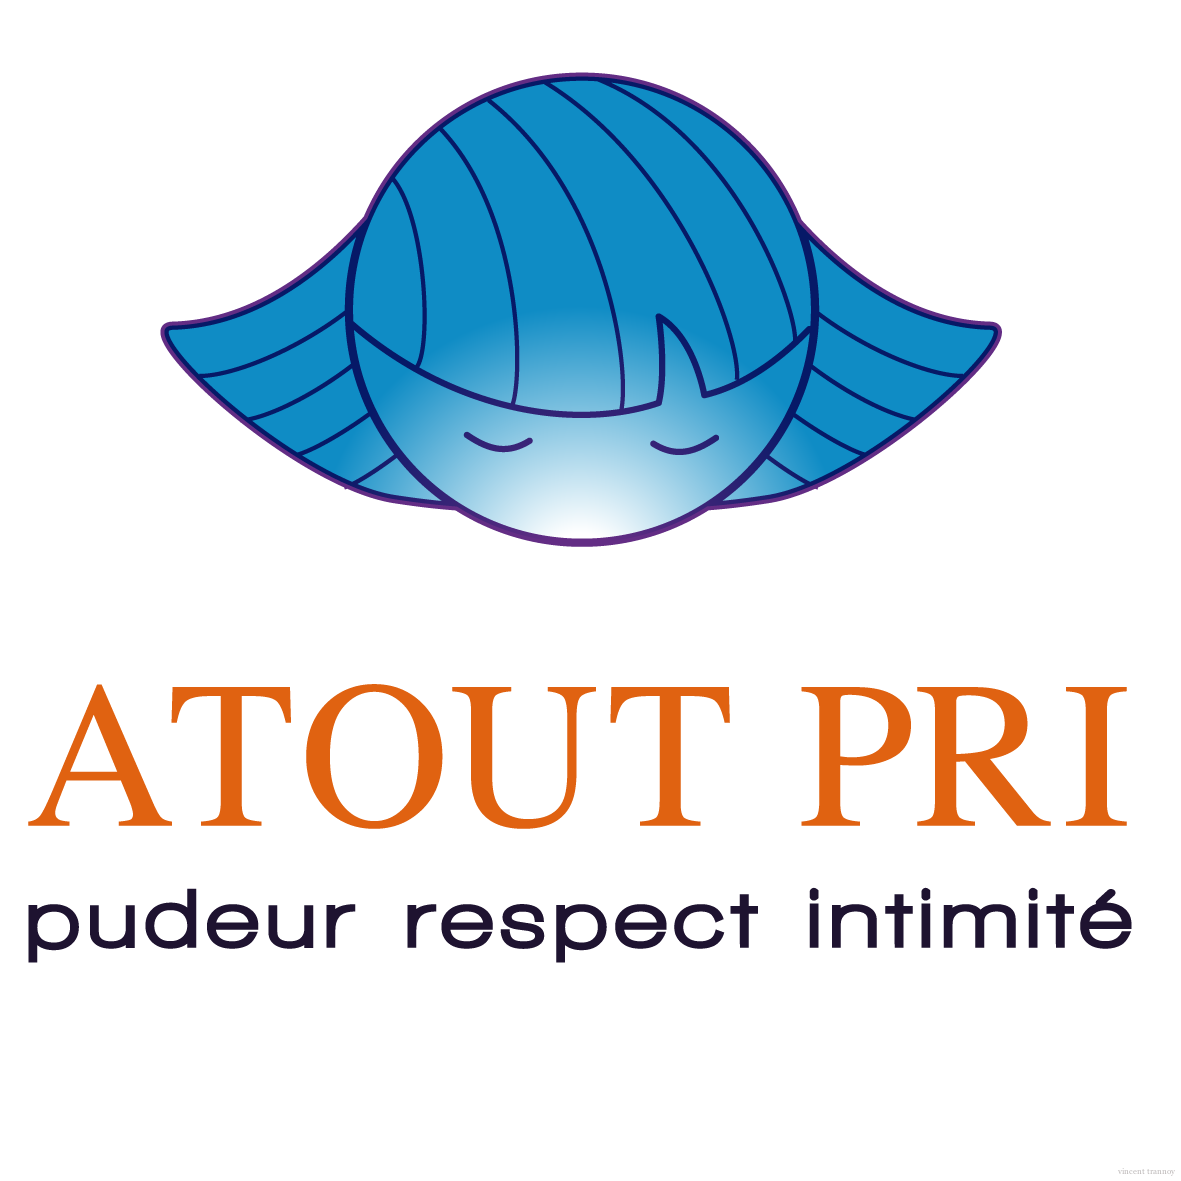 Atout PRI